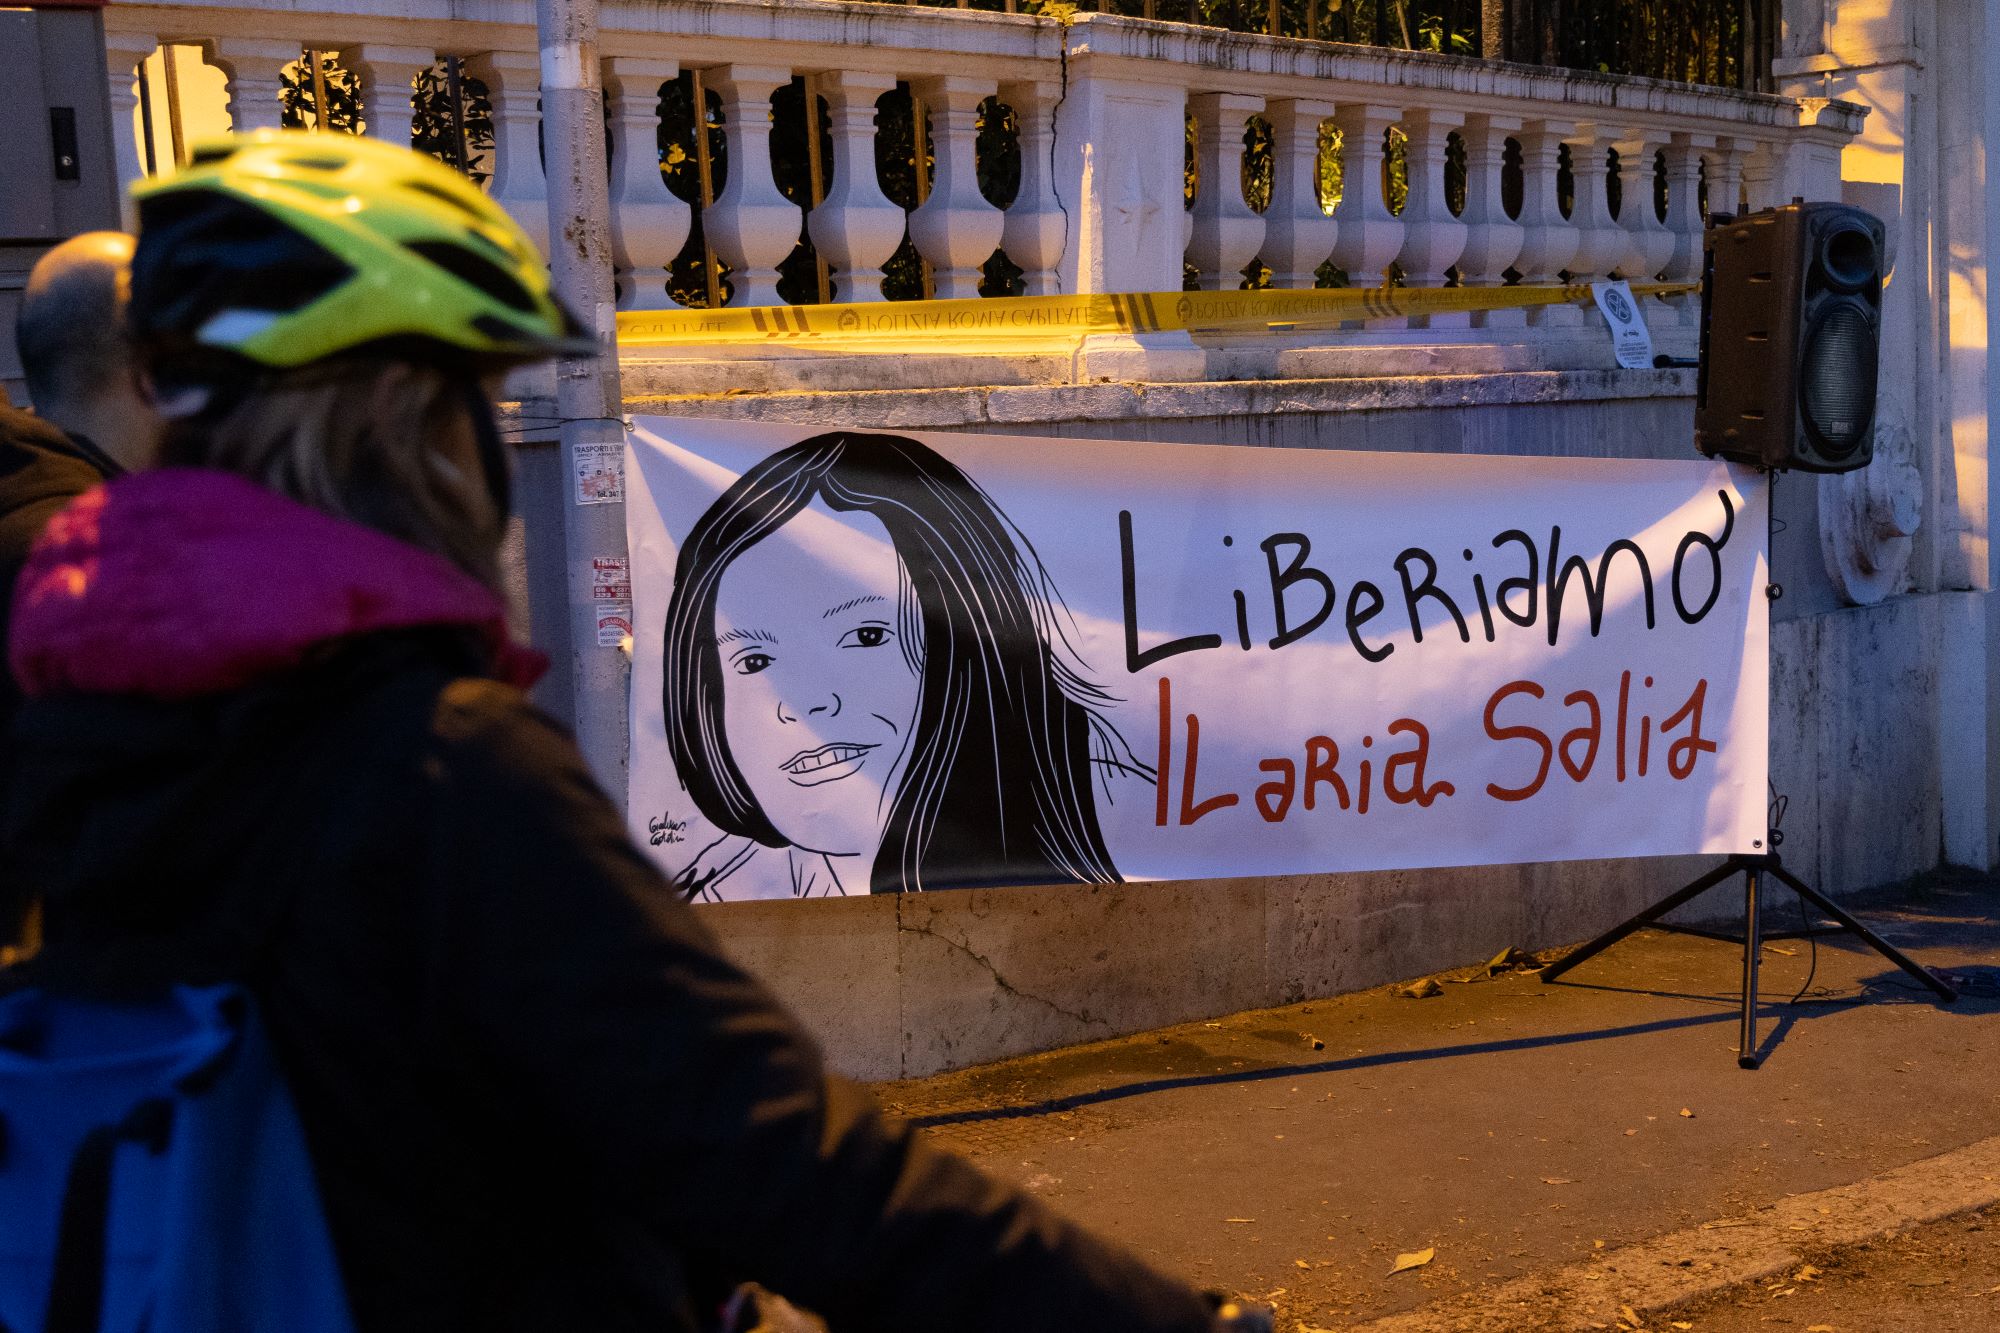 Le foto di una donna italiana ammanettata davanti a un tribunale in Ungheria hanno suscitato uno scandalo diplomatico.  La donna è stata torturata in carcere, sostiene l’Italia